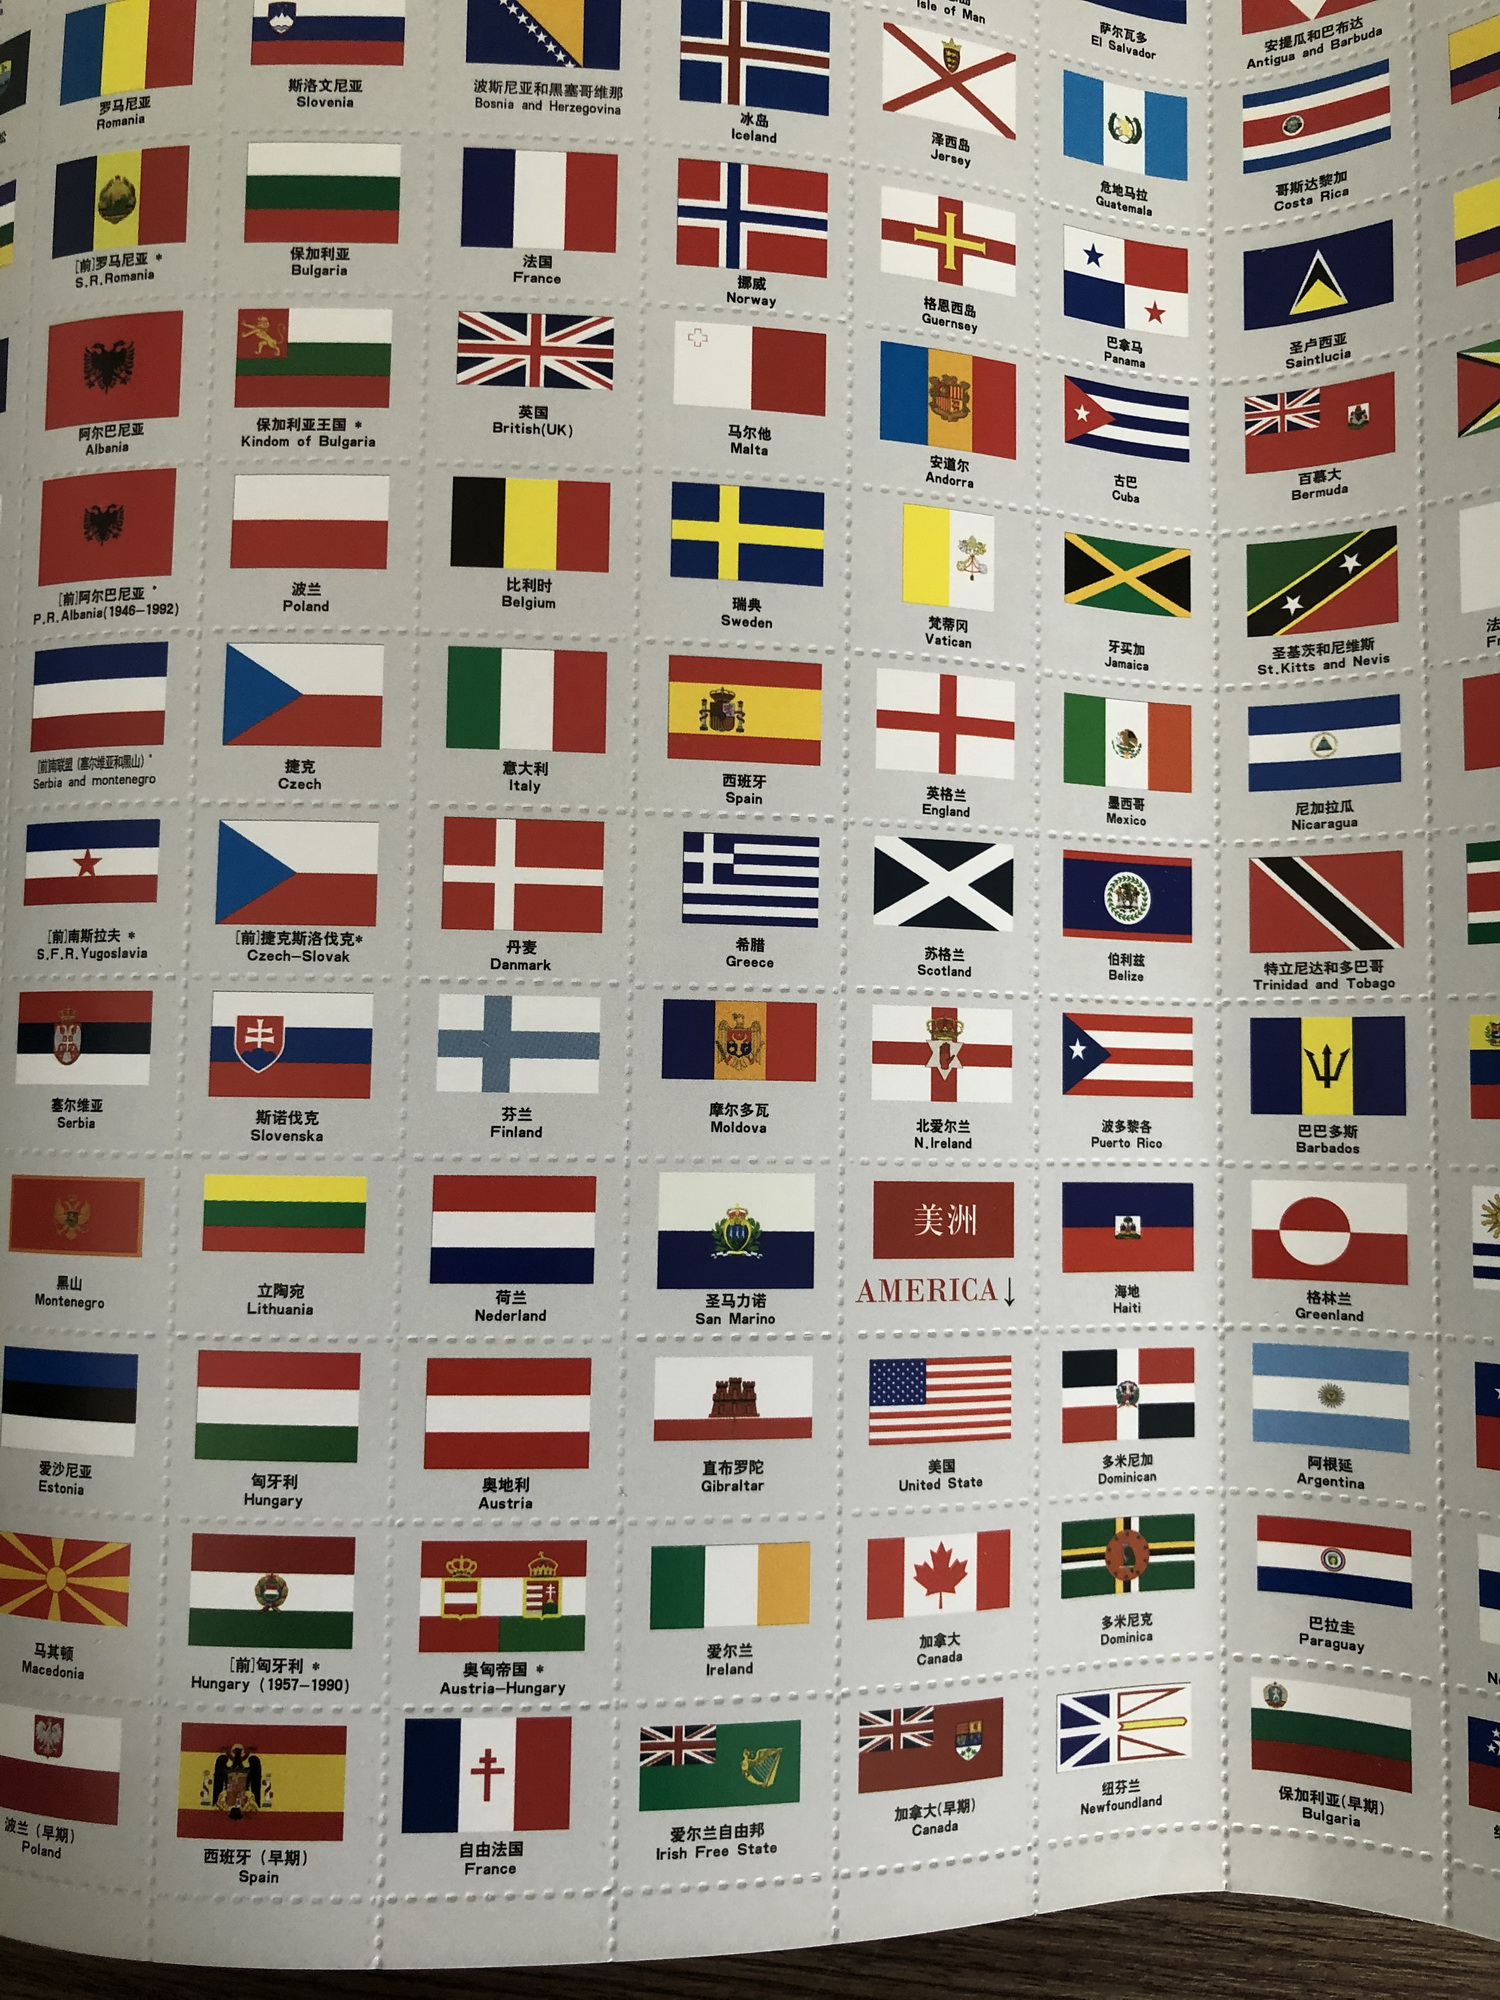 Bộ quốc kỳ thế giới: Bộ sưu tập này gồm các quốc kỳ được coi là đáng tự hào nhất trên thế giới. Những biểu tượng đặc trưng của mỗi quốc gia được thể hiện rõ nét với những màu sắc tươi sáng và hình dáng độc đáo. Hãy xem bức hình này và tìm hiểu ngay!